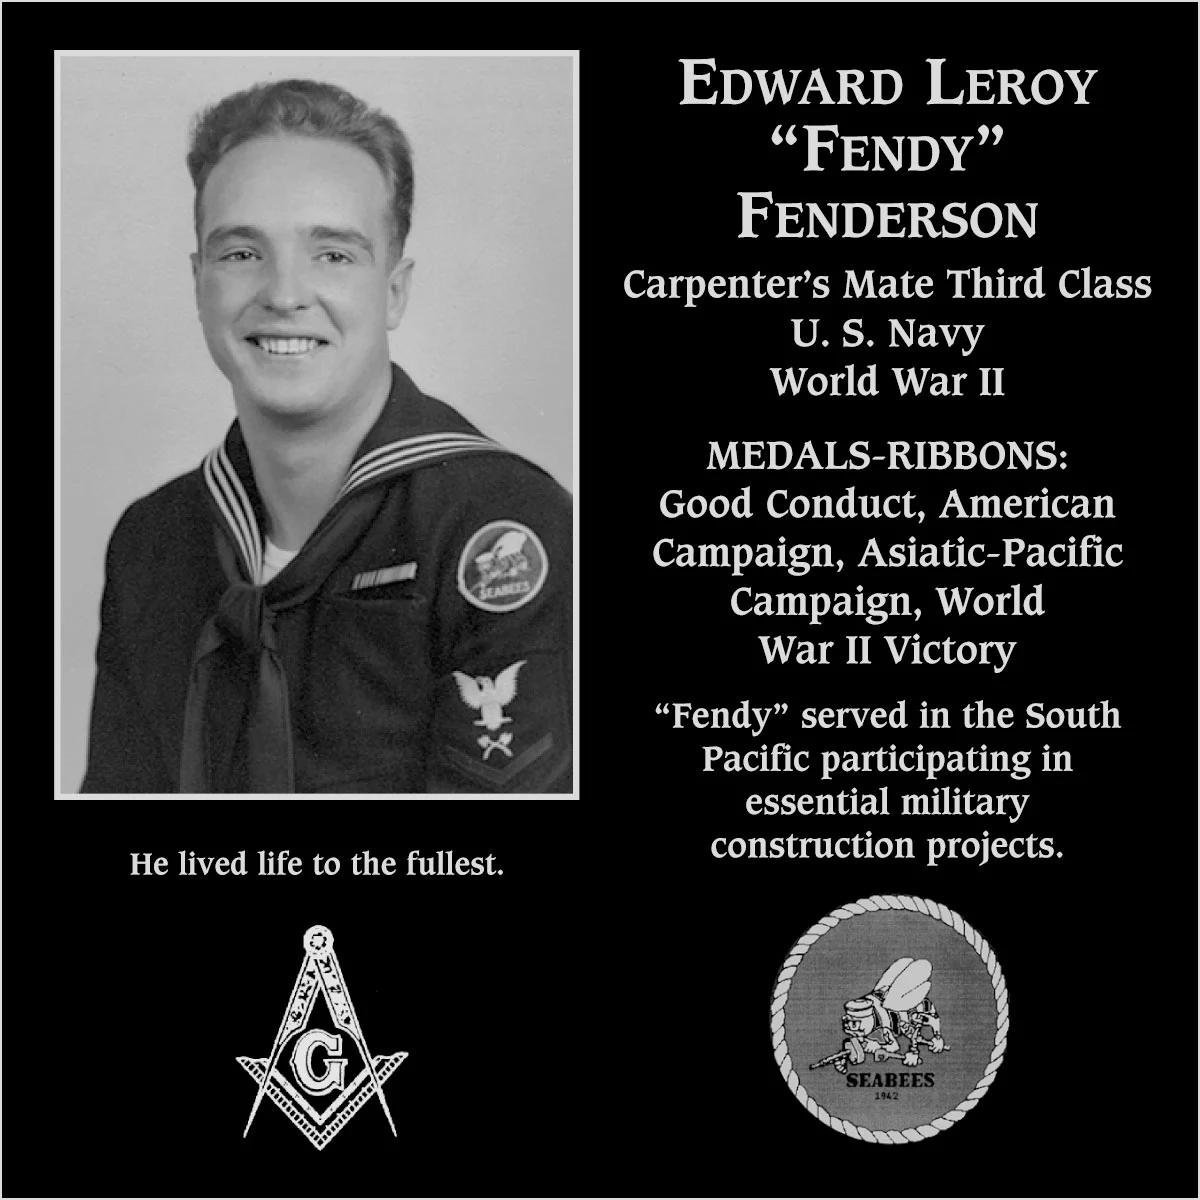 Edward Leroy Fenderson